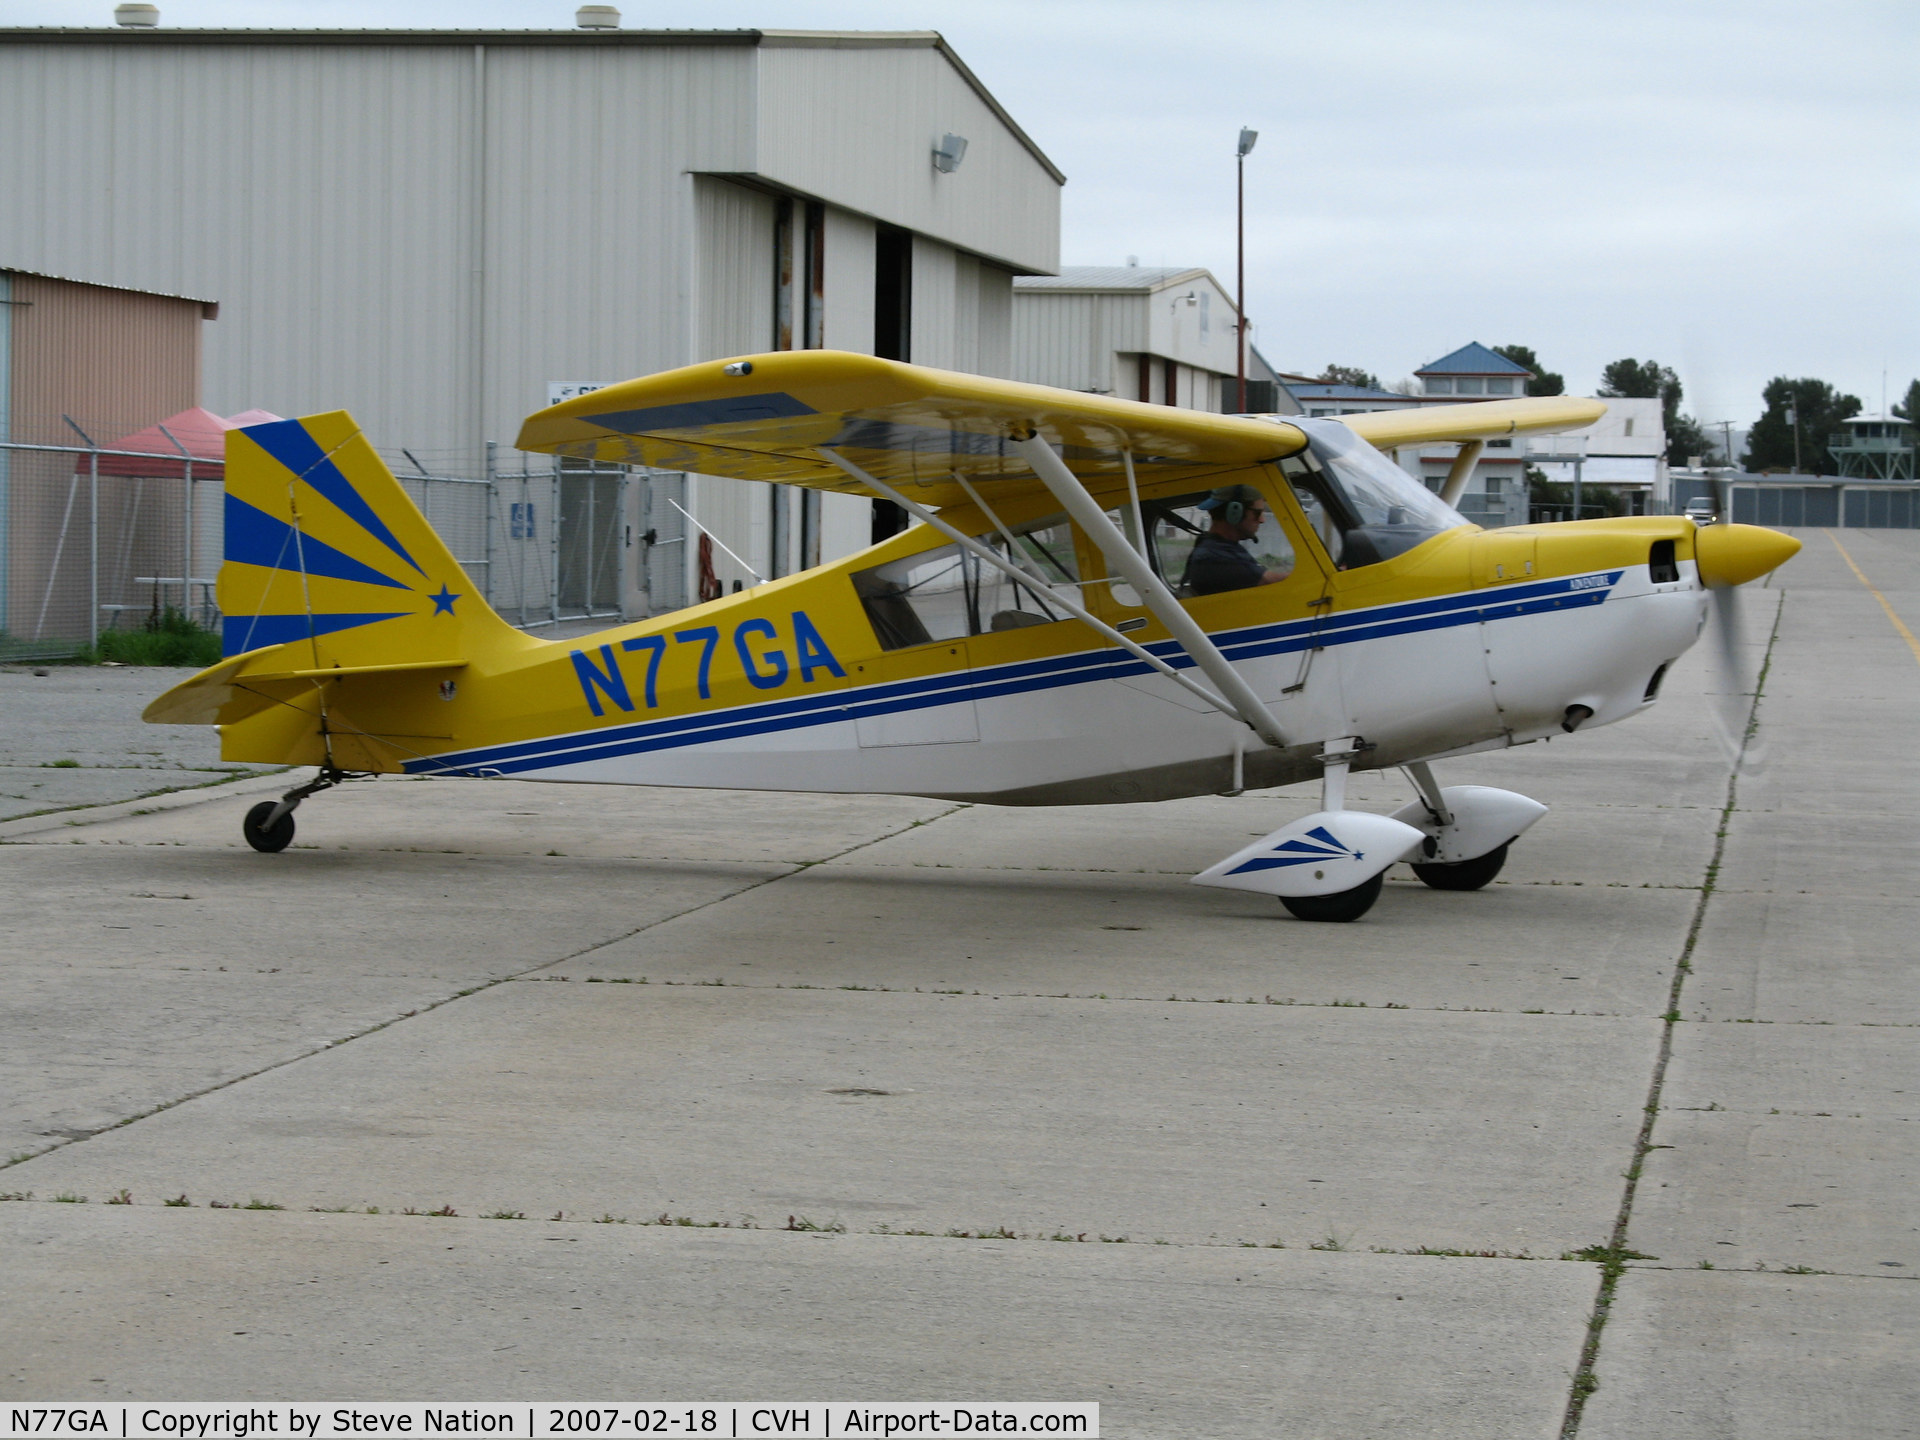 N77GA, 2003 American Champion 7GCAA Citabria C/N 471-2003, Ocean Air F/S 7GCAA visting from Watsonville @ Hollister (CA) Municipal